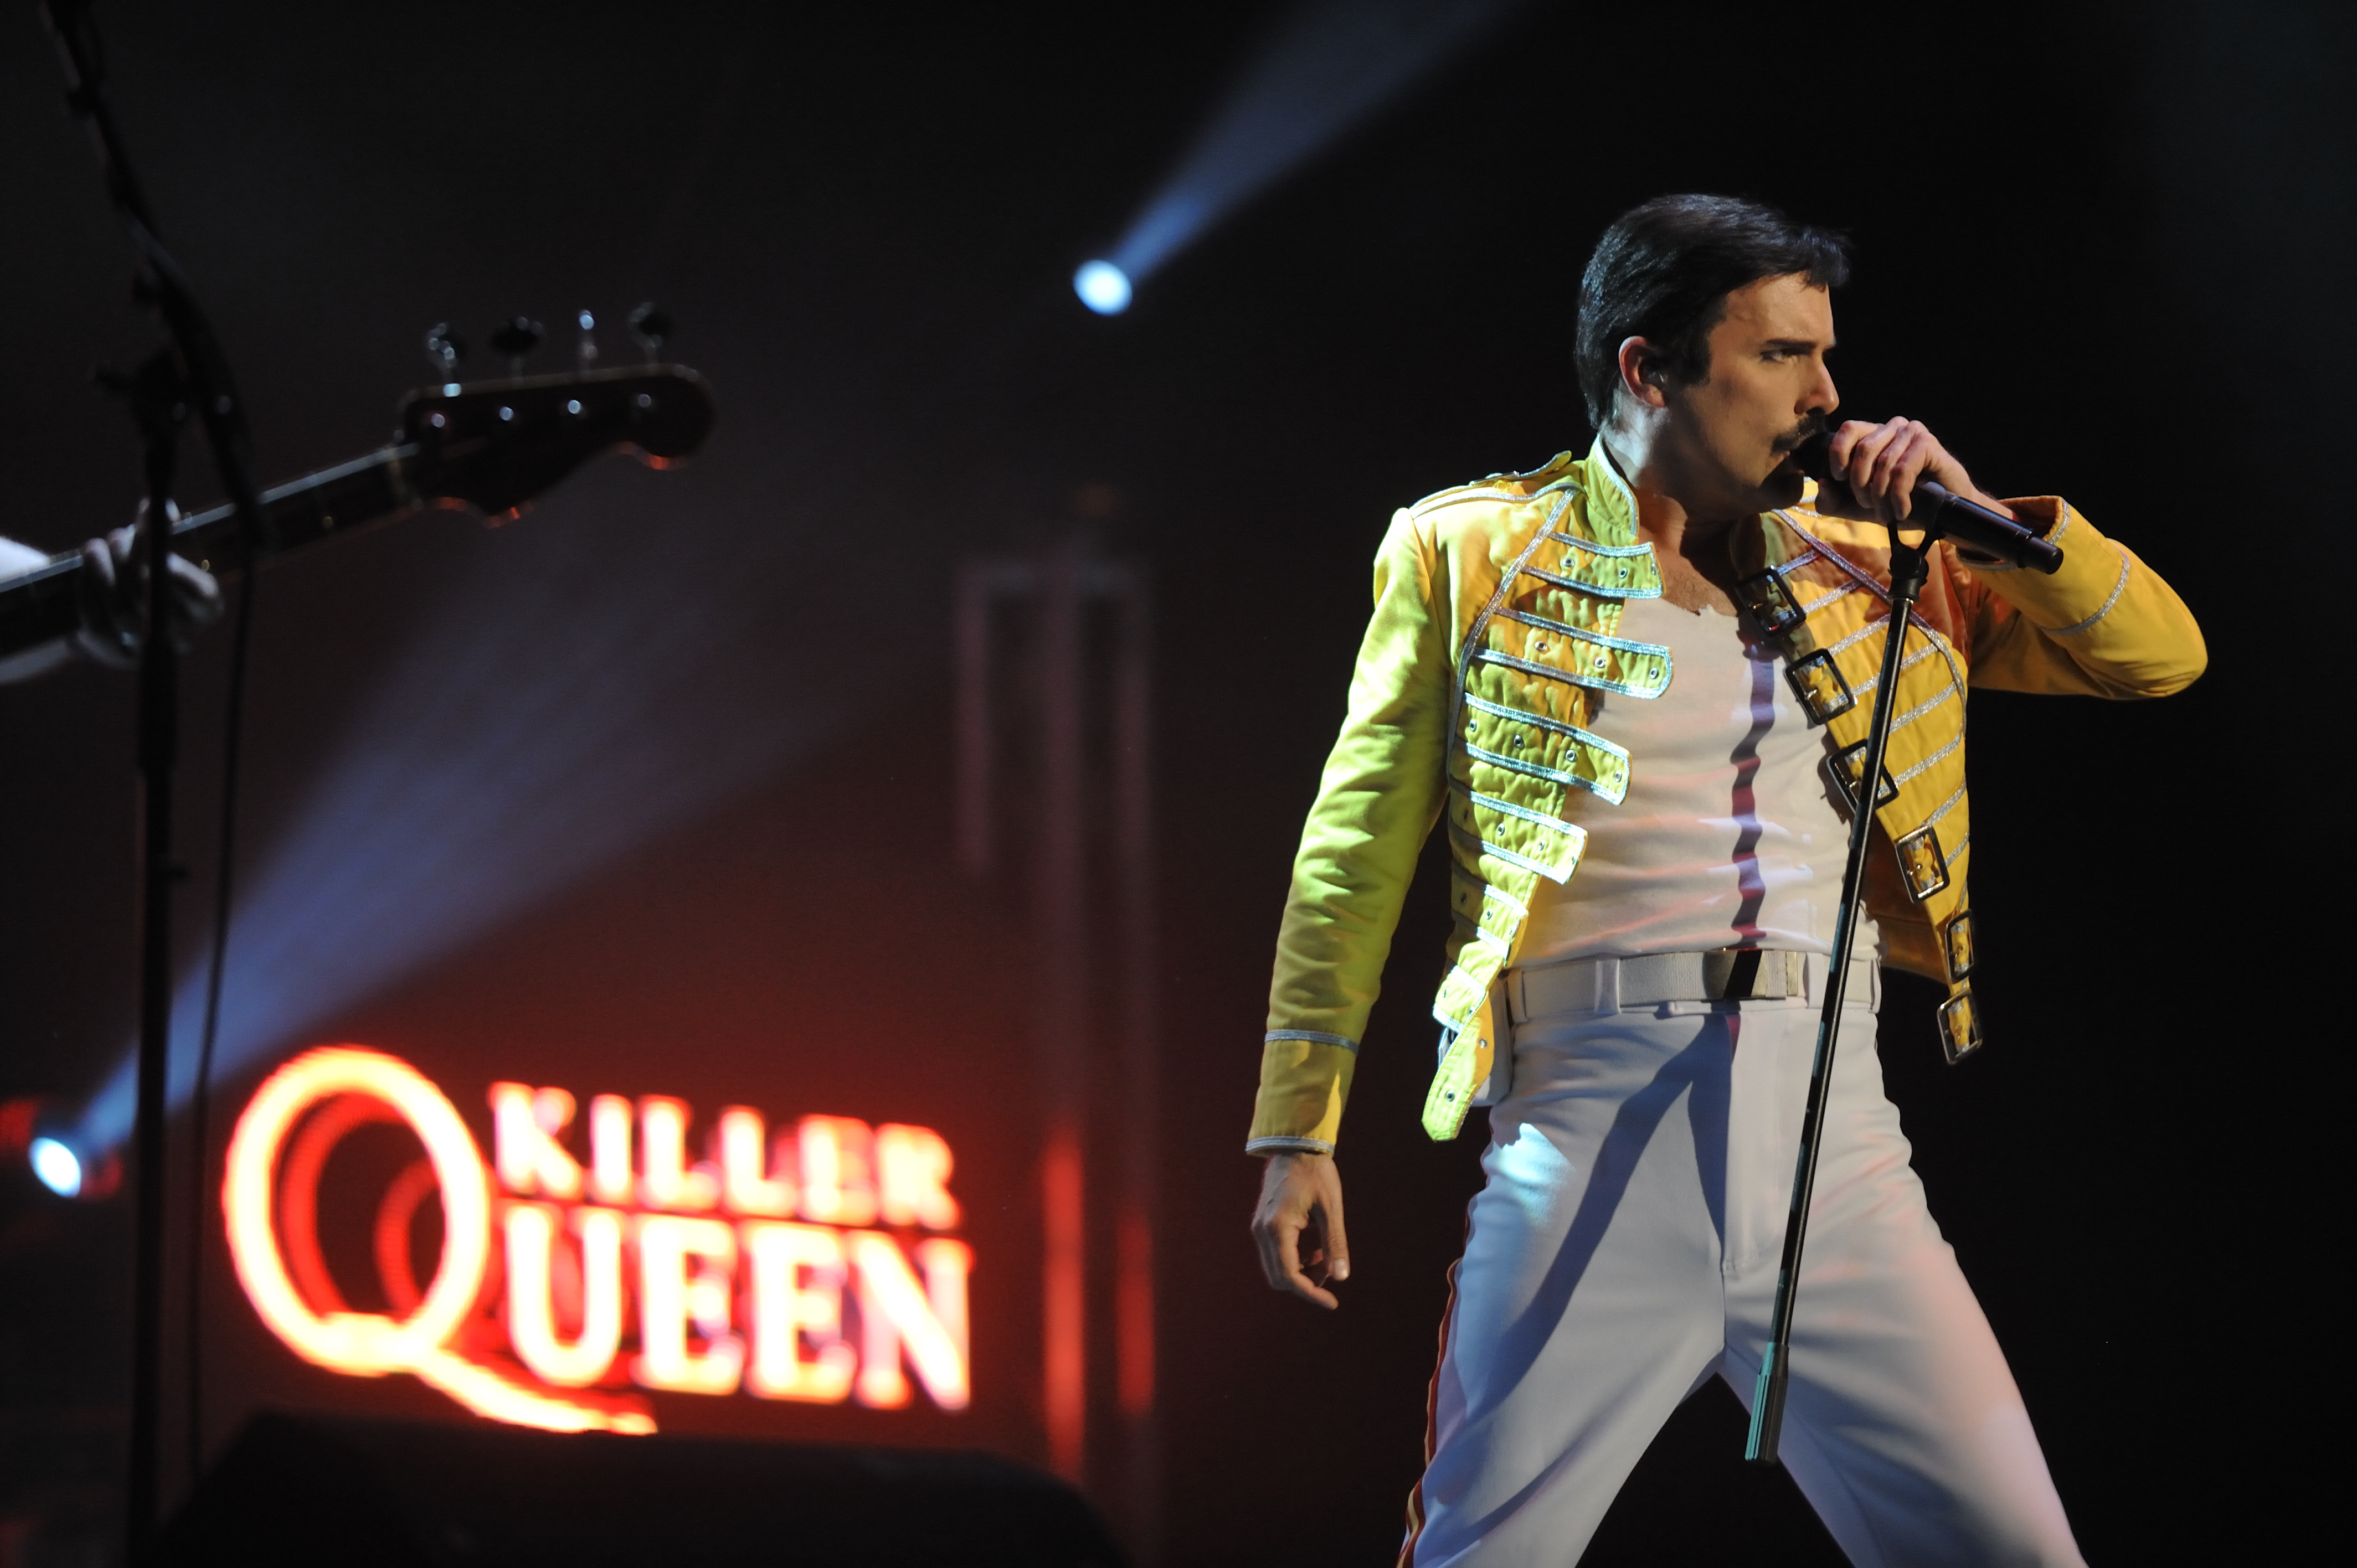 Killer Queen: Queen Tribute Band